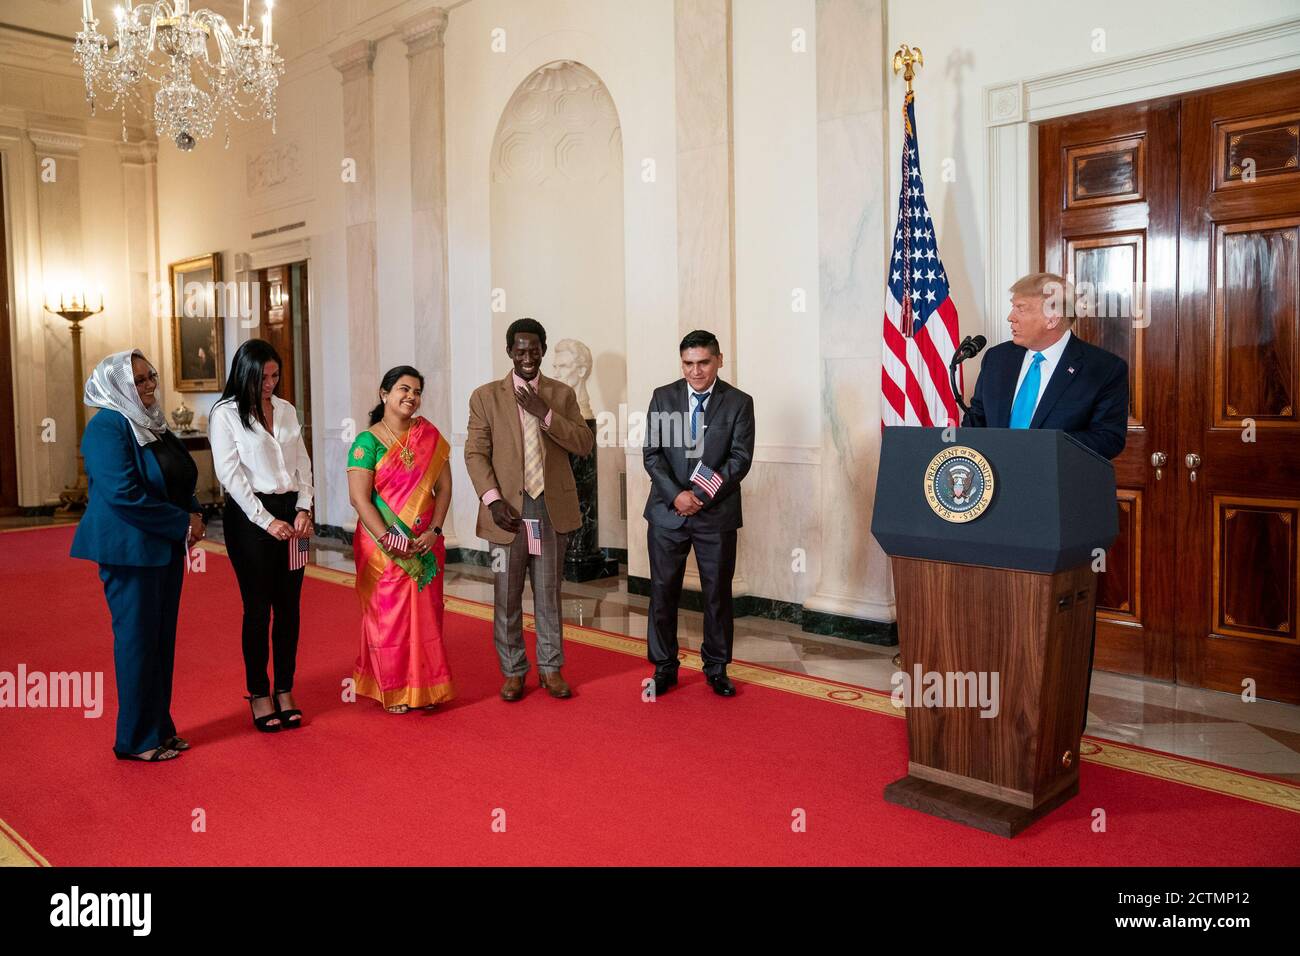 El presidente Trump participa en una ceremonia de naturalización. El presidente Donald J. Trump participa en una ceremonia de naturalización en el Salón de la Cruz de la Casa Blanca el lunes 25 de agosto de 2020. Foto de stock